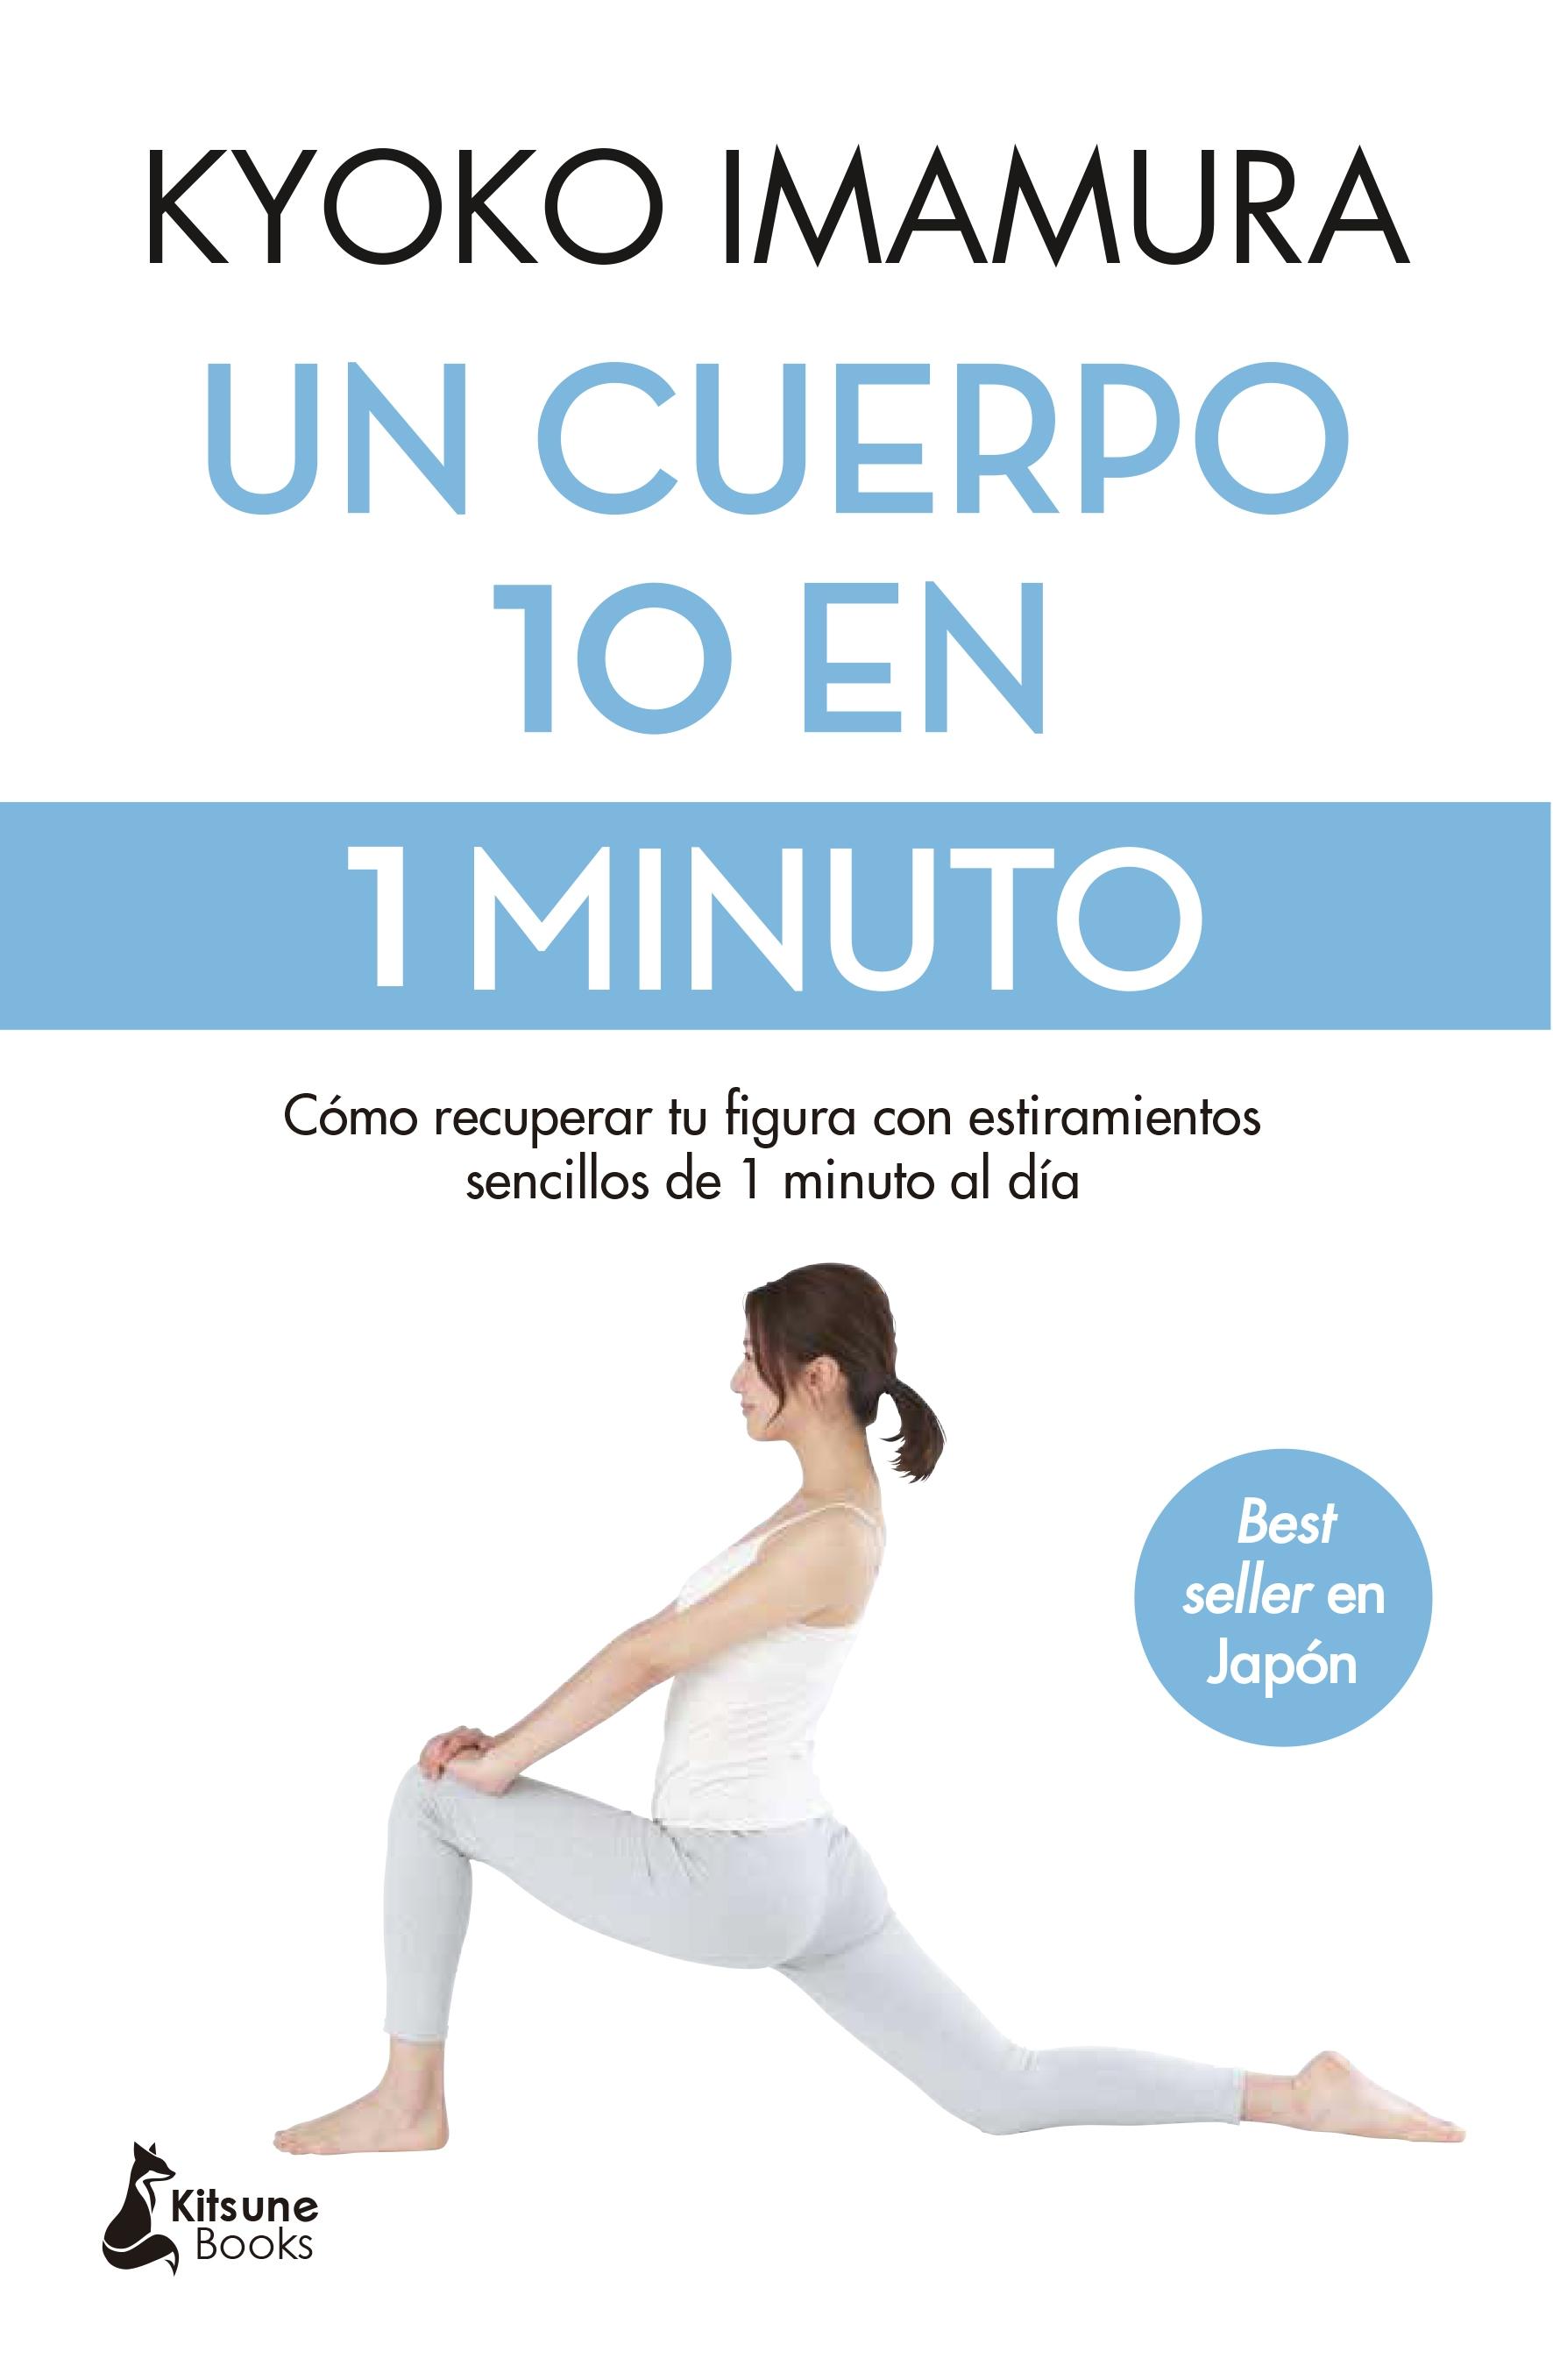 Cuerpo 10 en 1 minuto, Un "Cómo recuperar tu figura con estiramientos sencillos de 1 minuto al día"